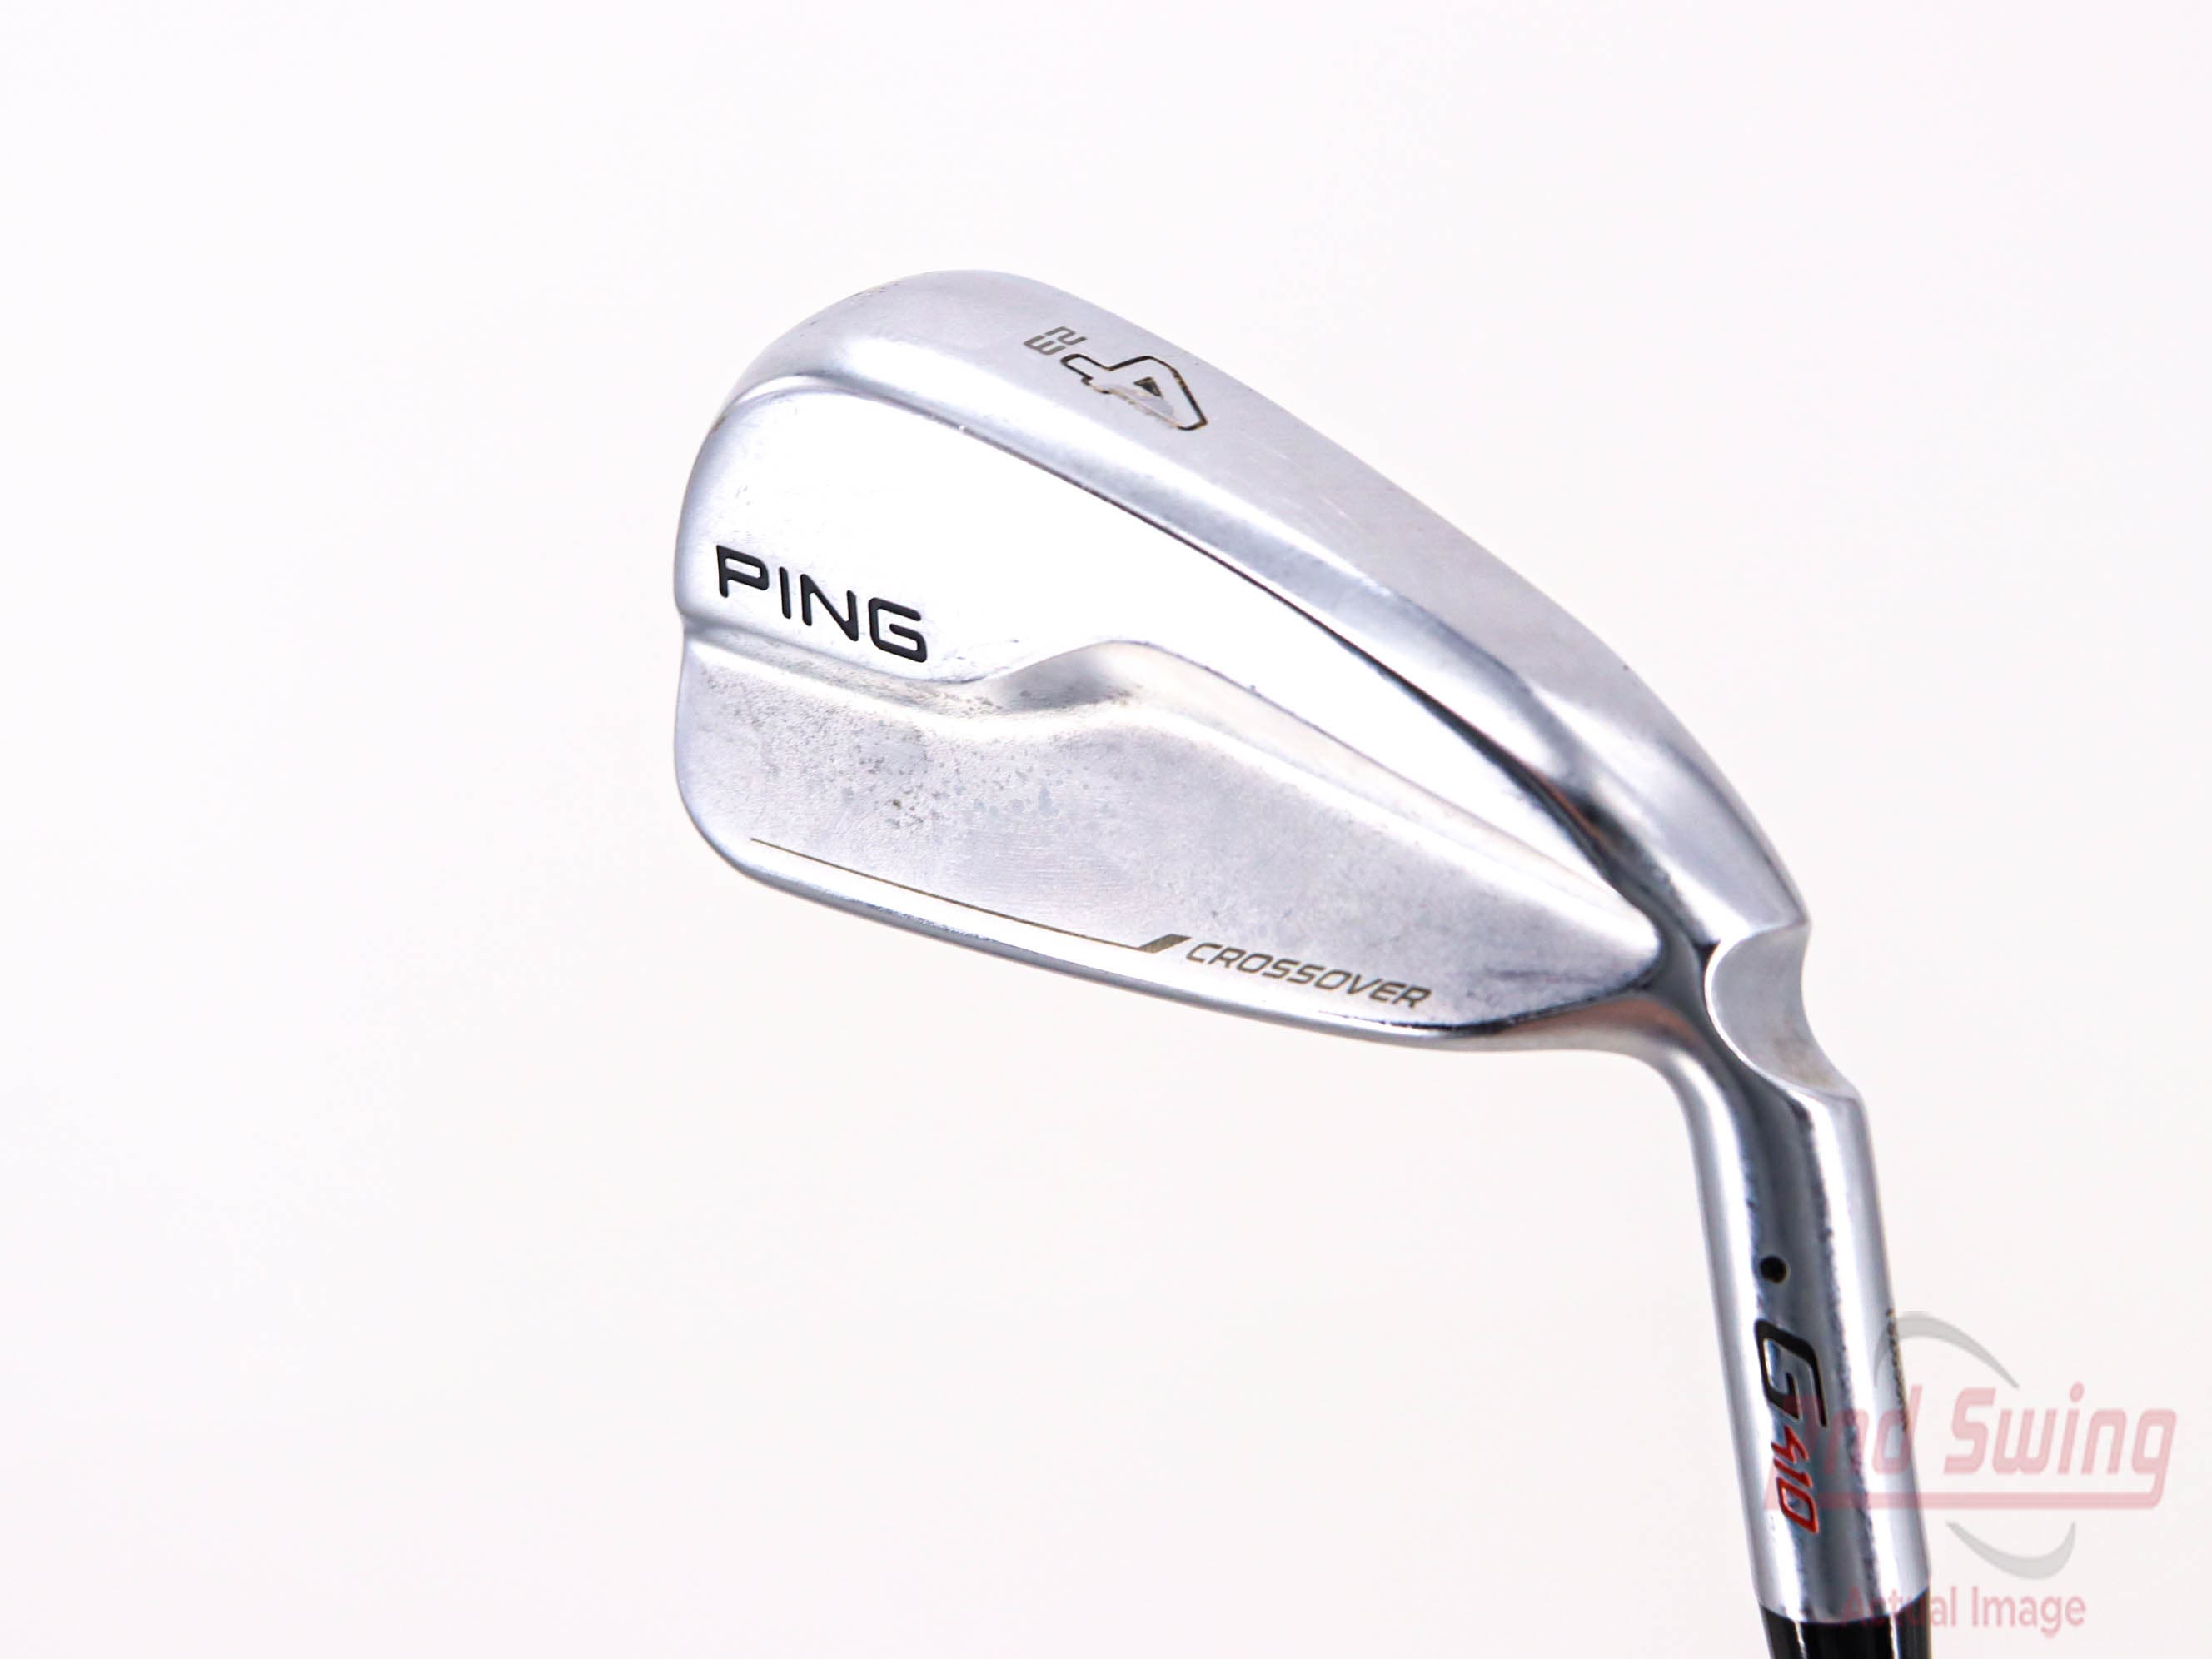 Ping G410 Crossover Hybrid | 2nd Swing Golf